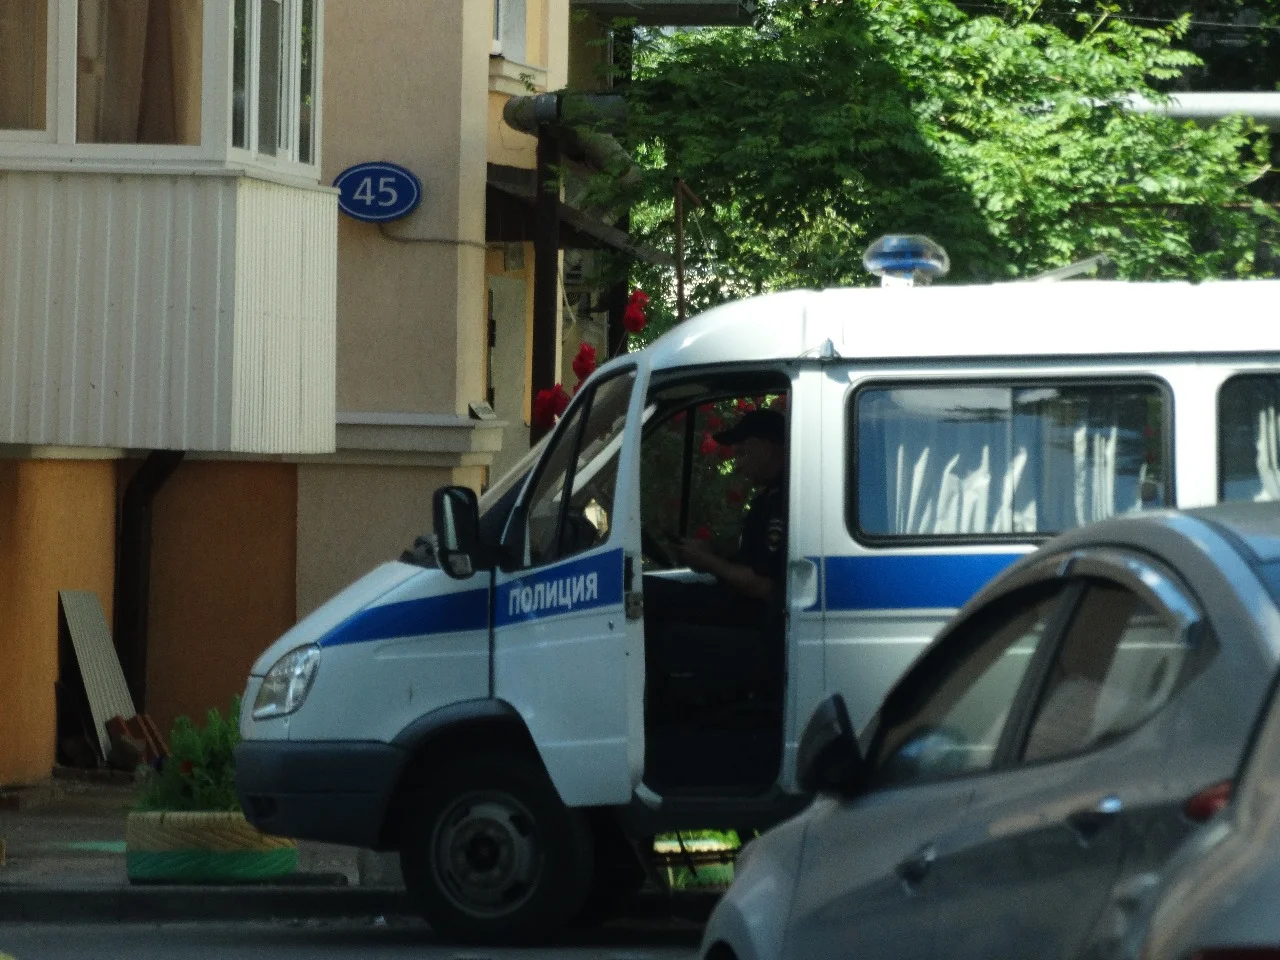 Сбежавший из части контрактник задержан силовиками в Ростове